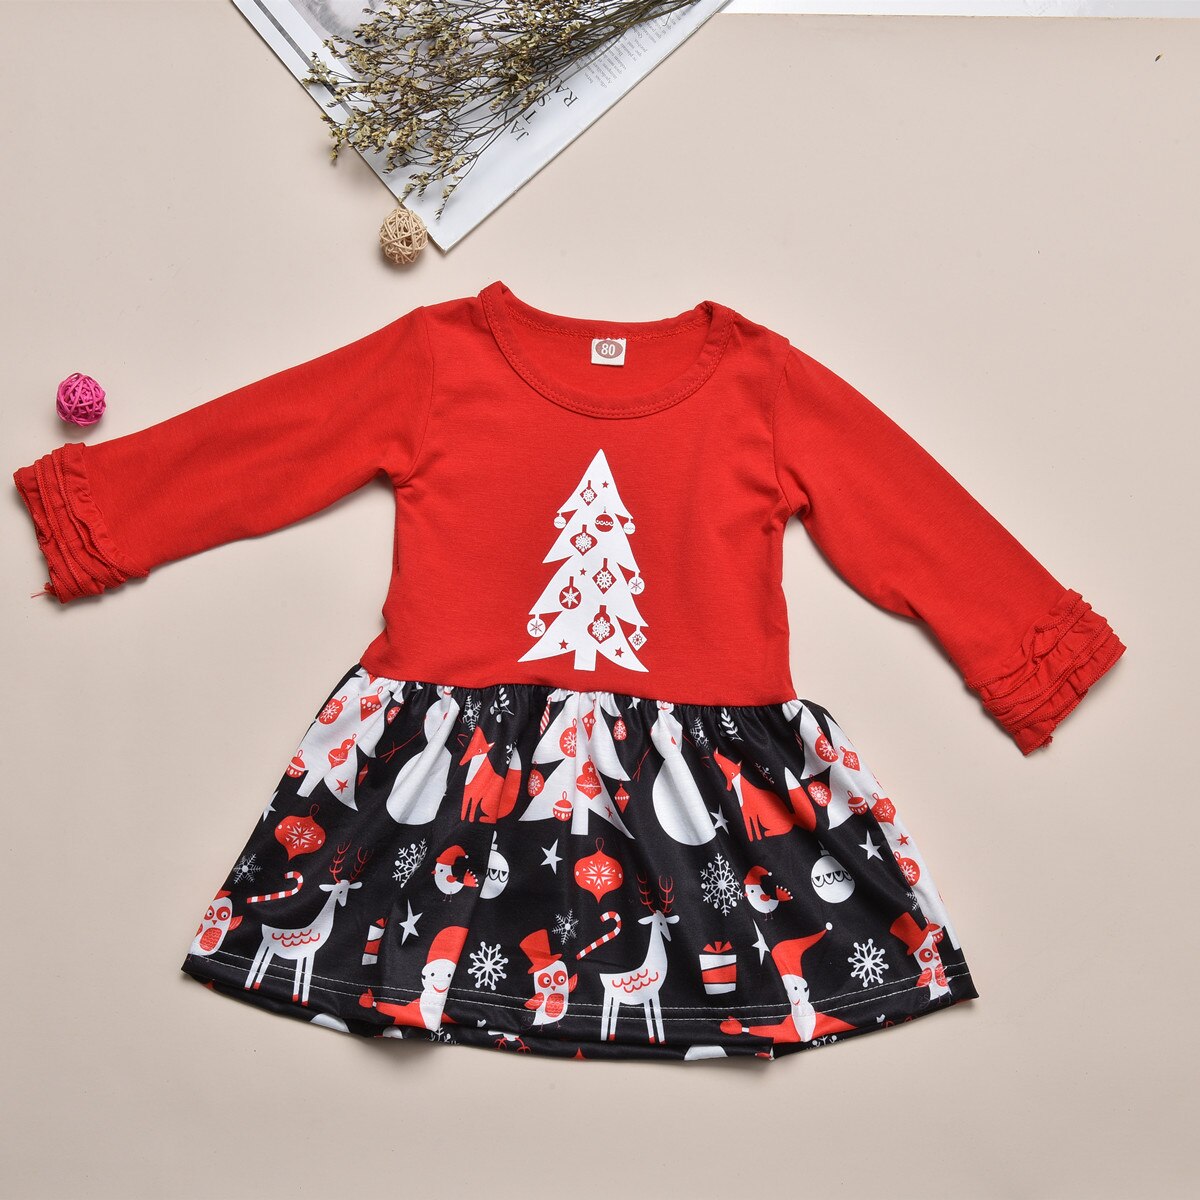 1-6- årig piges kjole dragt julekjole jul snemand juletræ